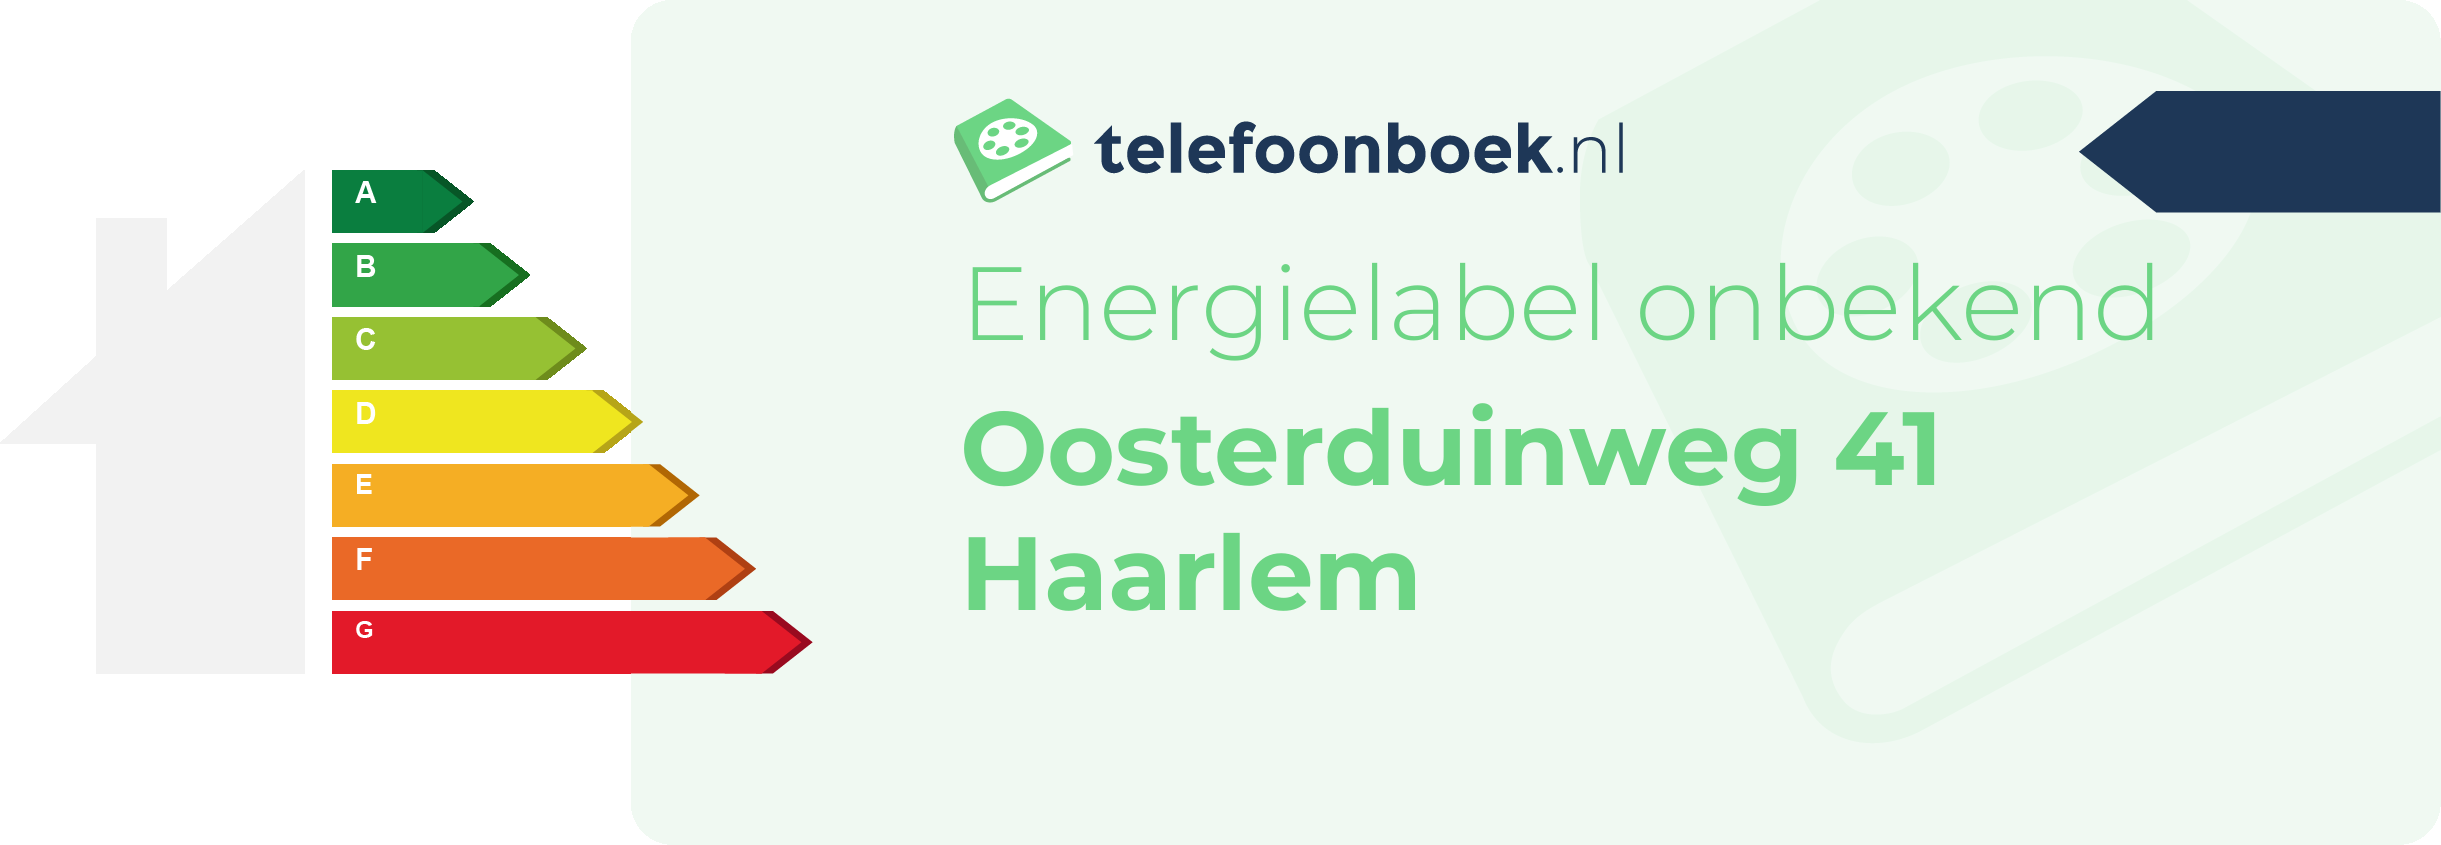 Energielabel Oosterduinweg 41 Haarlem